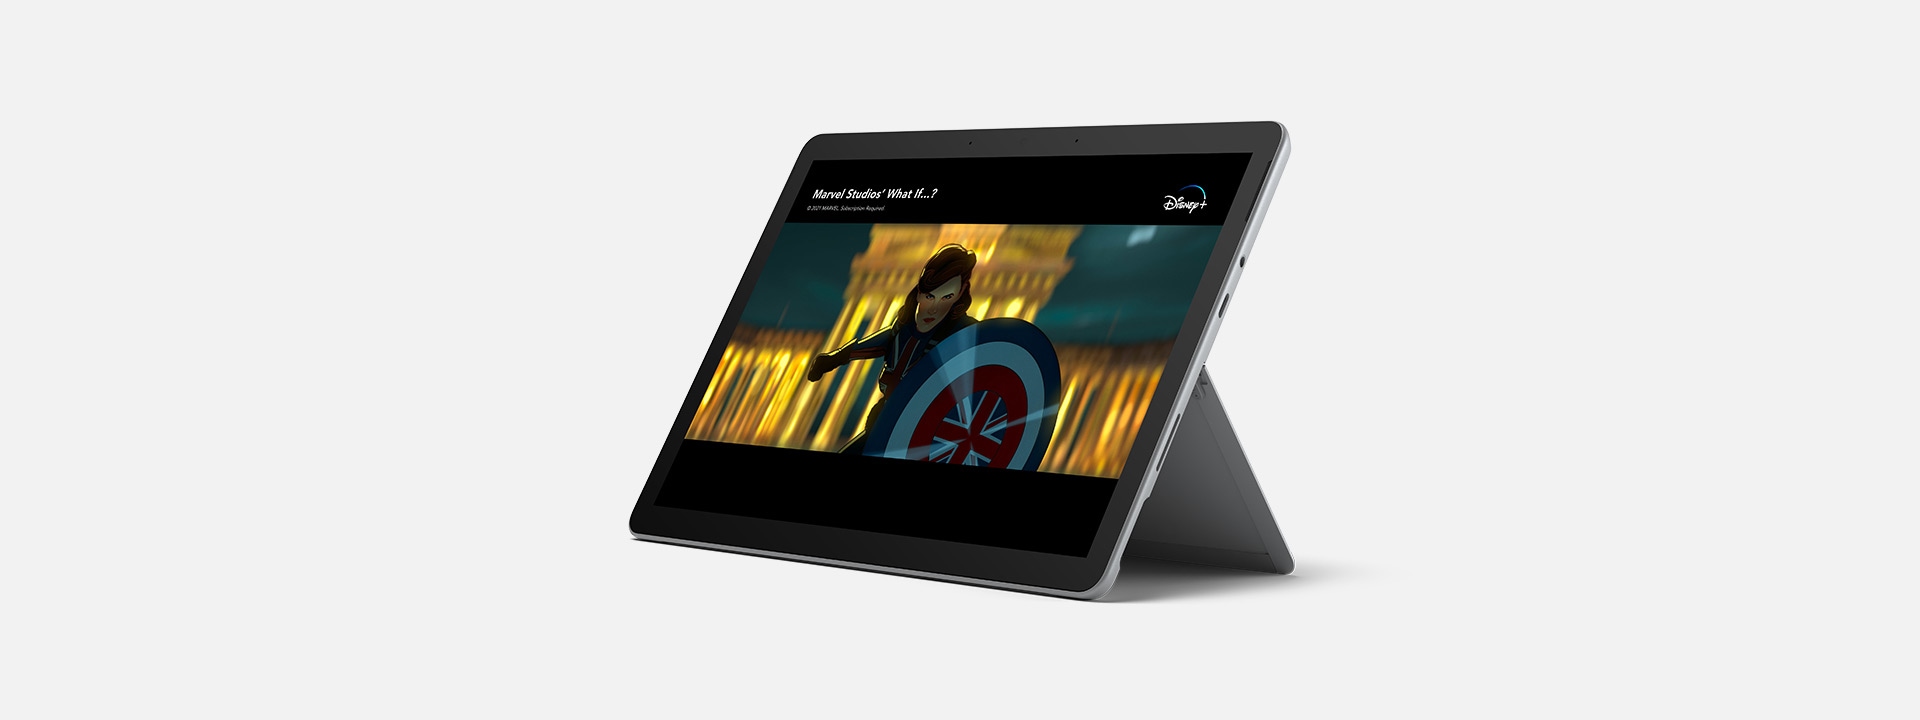 Disney+ 独占コンテンツが表示されている、キックスタンド モードの Surface Go 3。